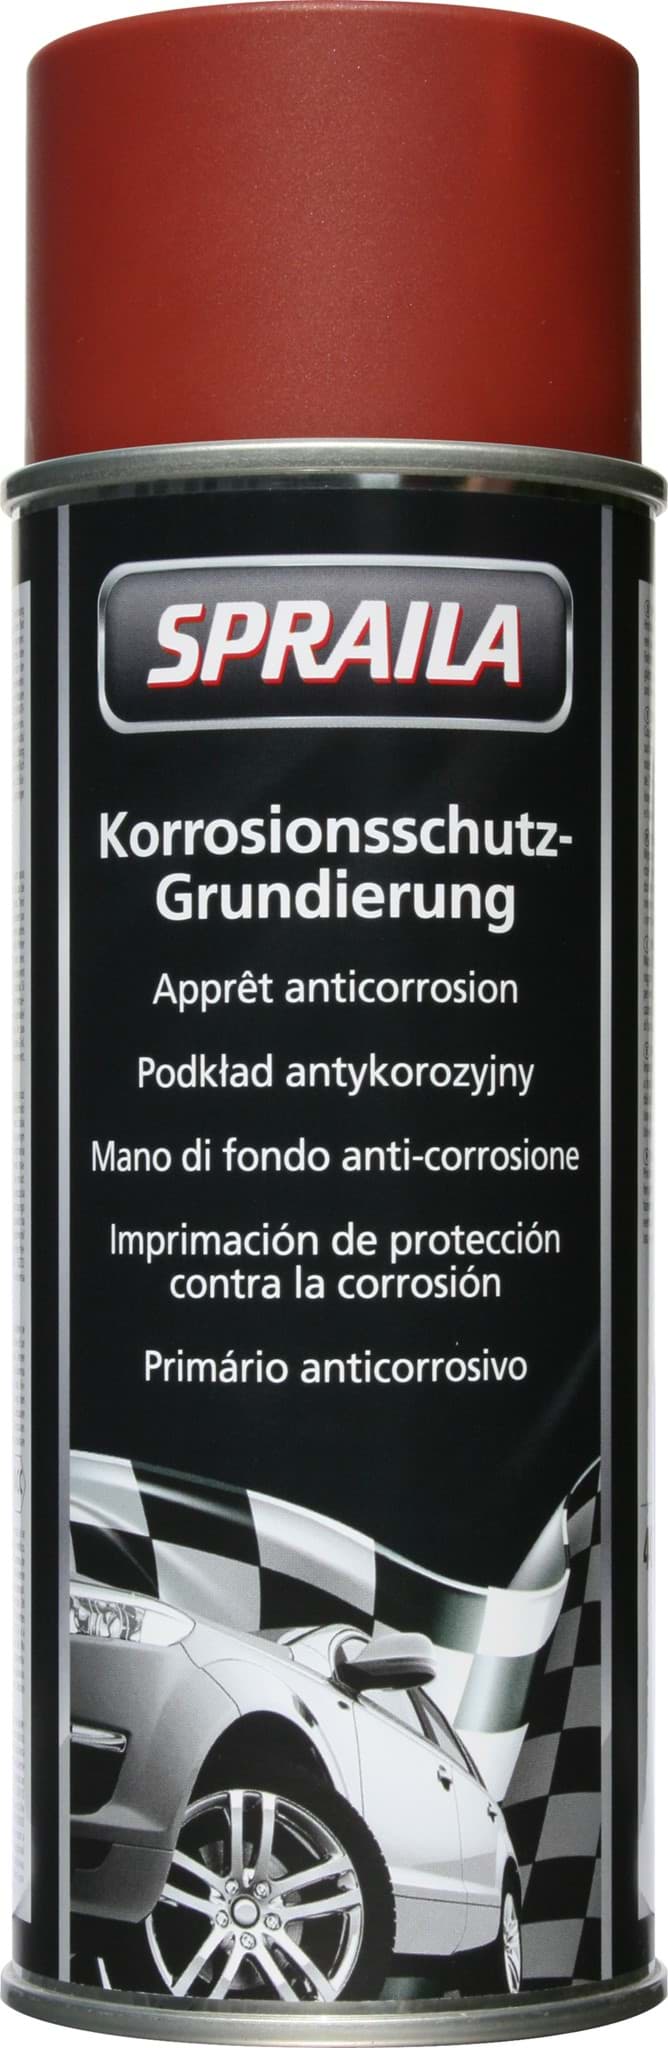 Spraila Lackspray Korrosionsschutz-Grundierung 400ml K300058 resmi